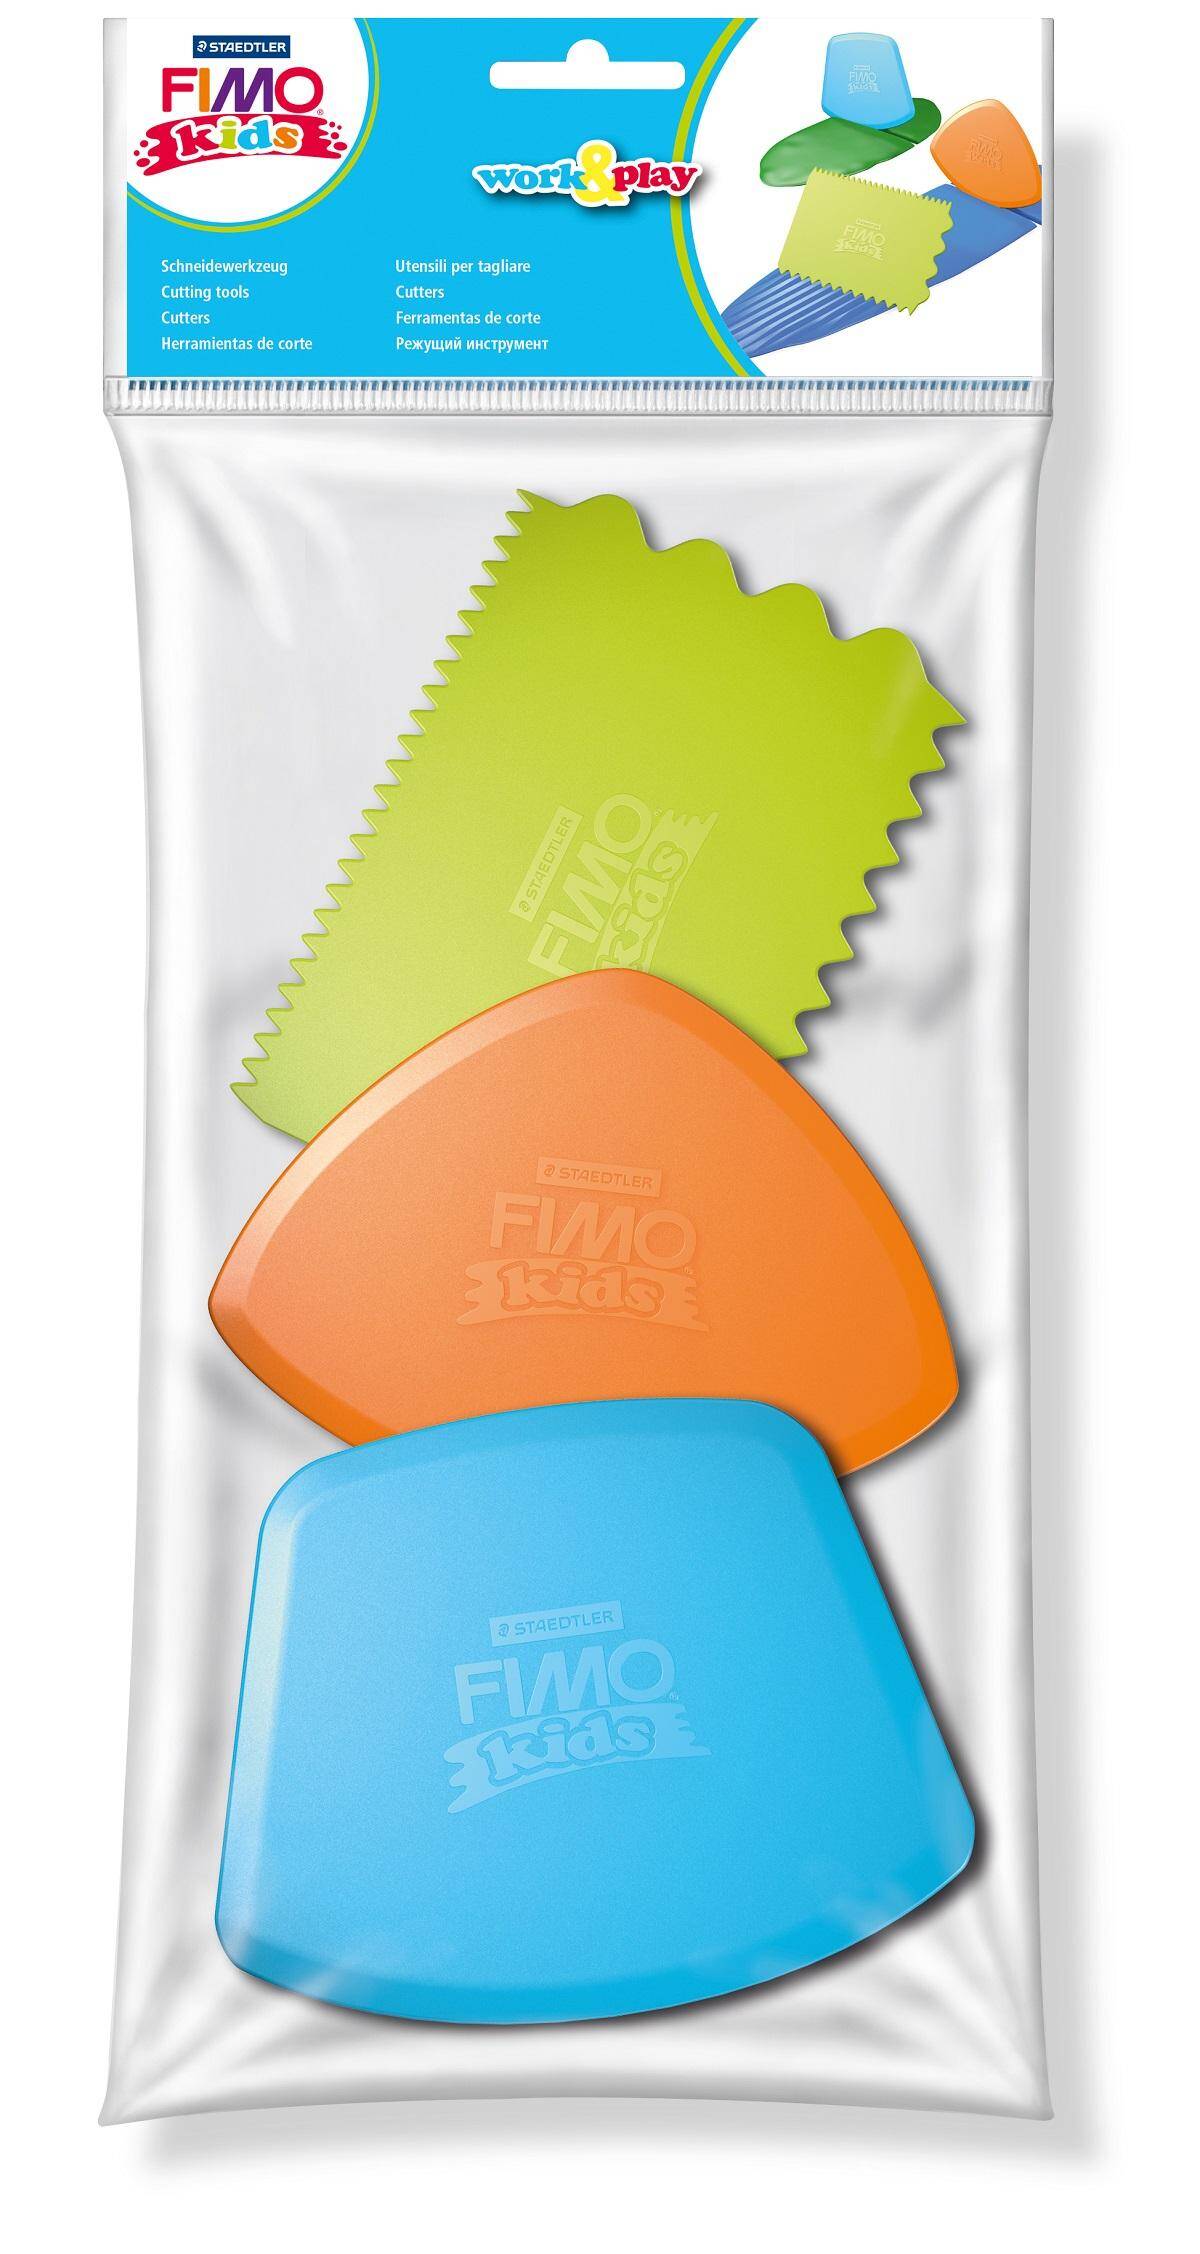 Fimo zestaw narzędzi dla dzieci 3 typy nożyków plastikowych Staedtler